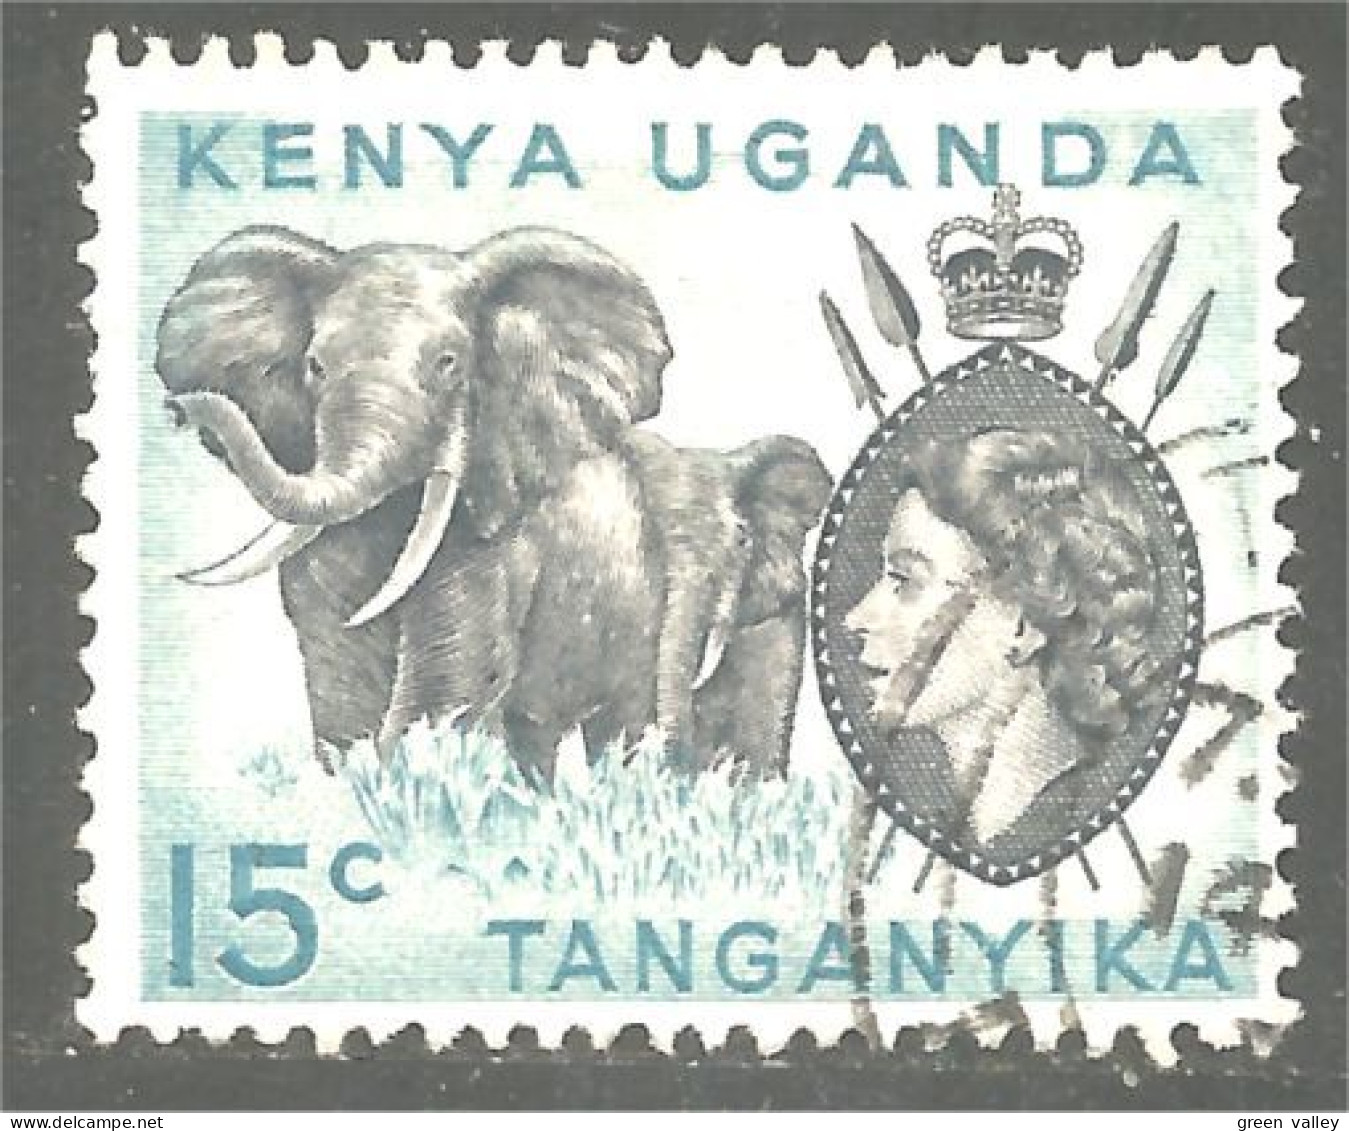 554 Kenya Uganda Tanganyika  Elephant Elefante Norsu Elefant Olifant (KUT-71) - Eléphants